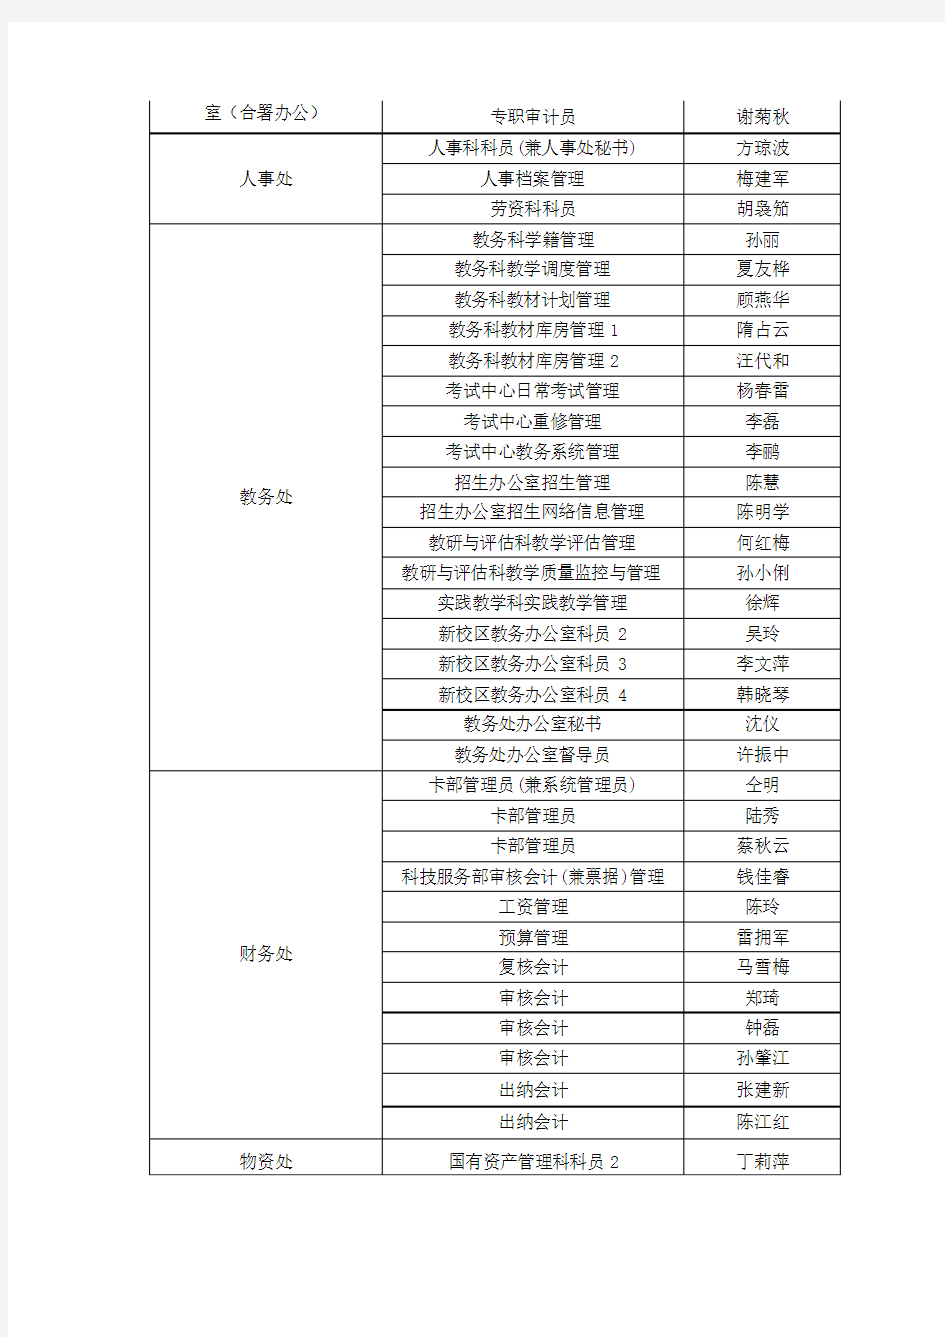 南京工程学院科级以下党政管理人员岗位聘任情况一览表